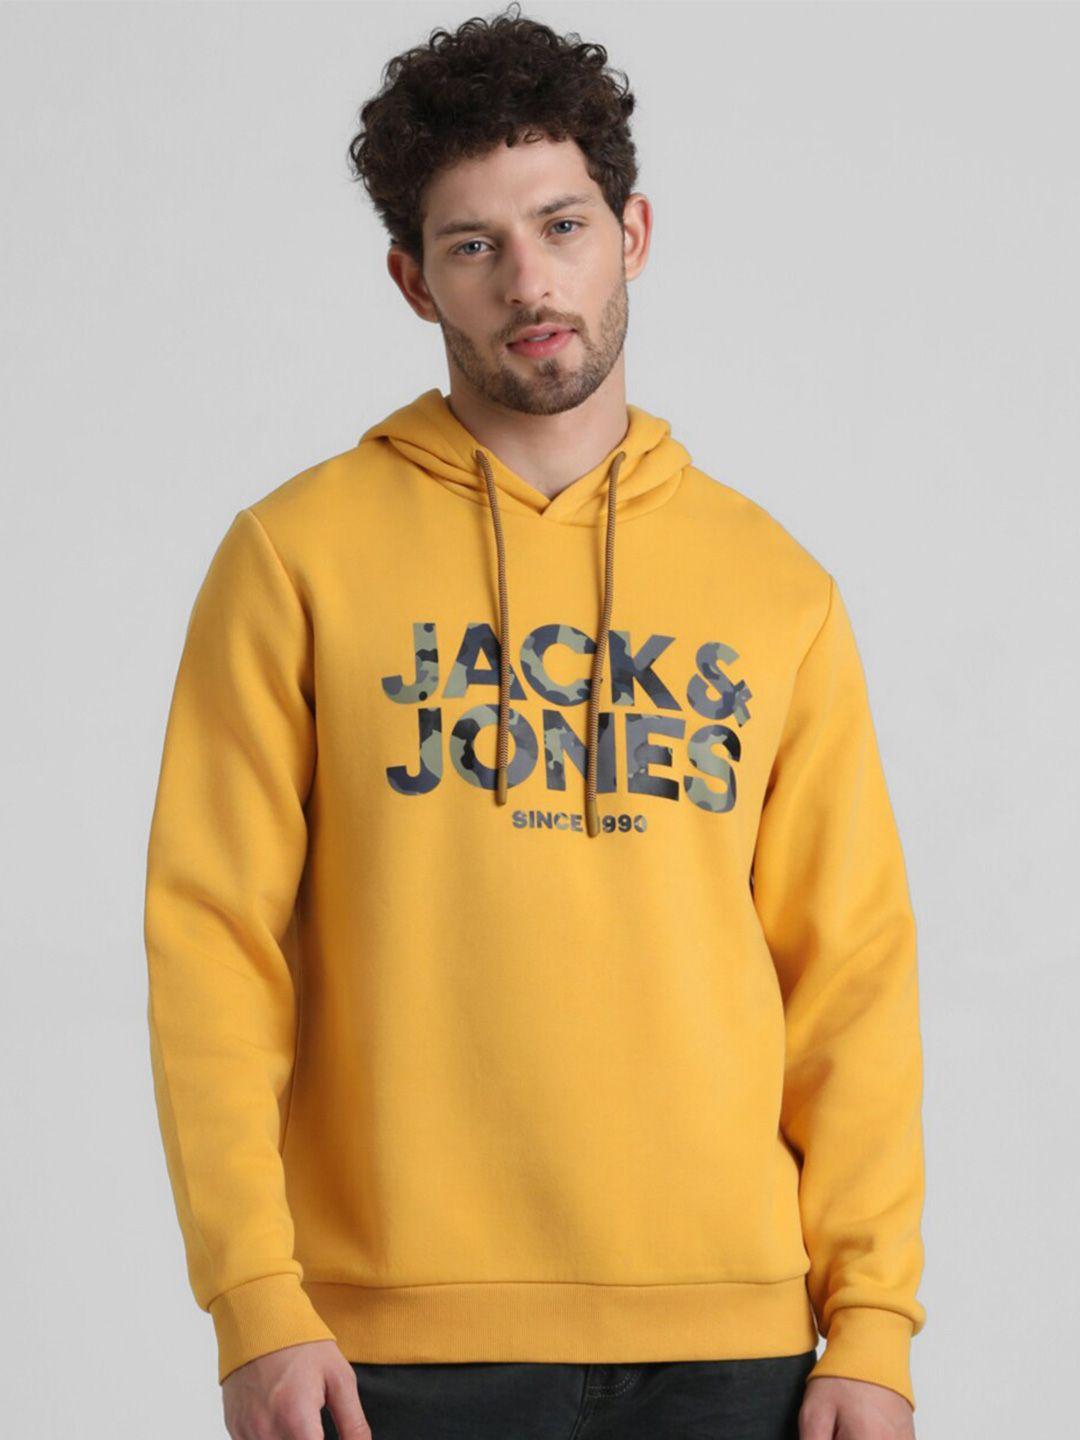 Jack & Jones Brand Logo Printed Hooded Sweatshirt